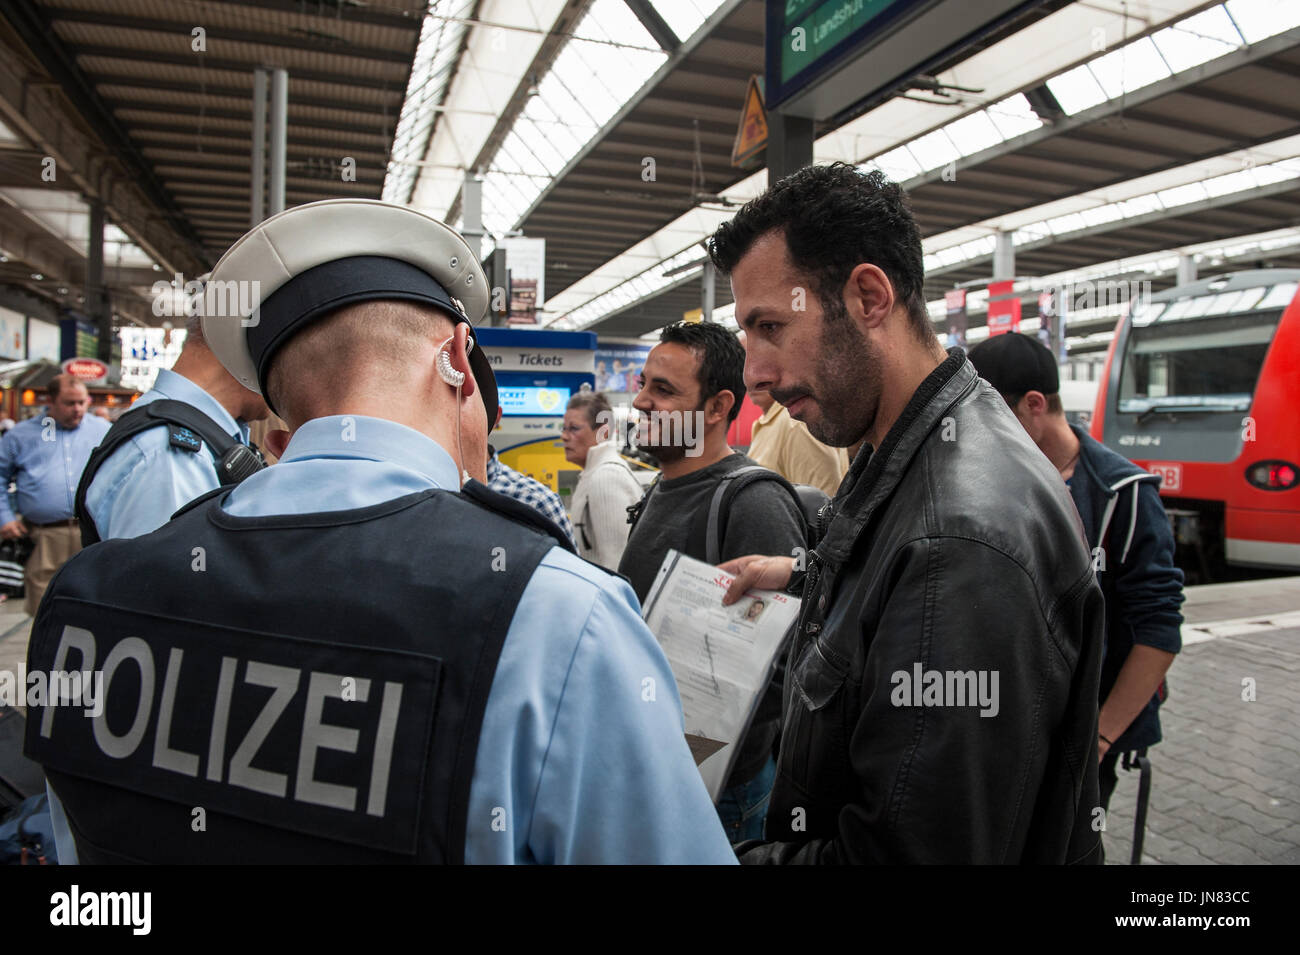 Monaco di Baviera, Germania - 22 Settembre 2015: i rifugiati che arrivano a Monaco di Baviera. I richiedenti asilo dalla Siria, Afghanistan e dei paesi balcanici ottenere controllati dalla polizia. Foto Stock